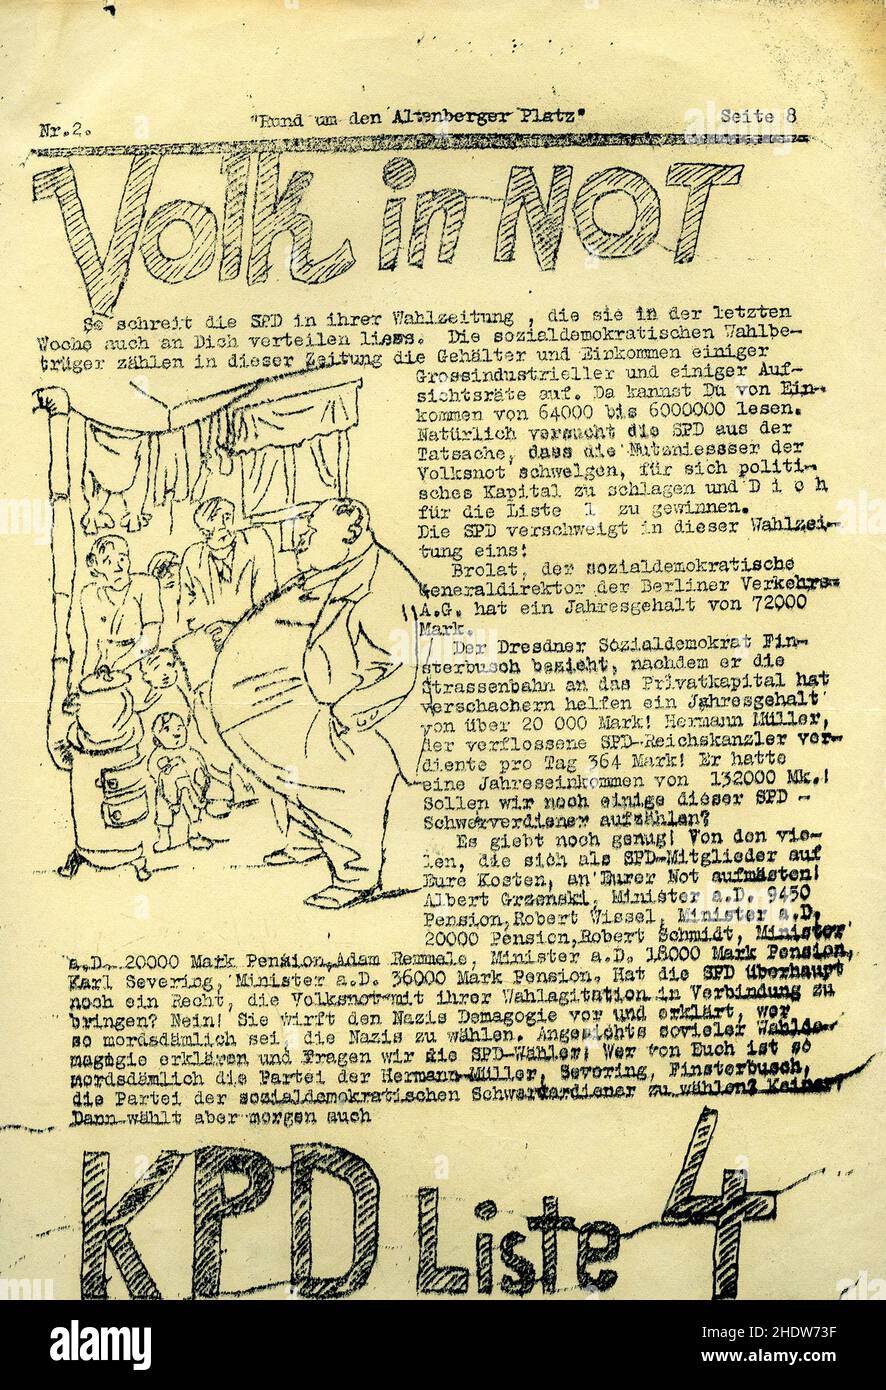 Journal du Parti communiste d'Allemagne 'rund um den Altenberger Platz' N2.« Volk In Not ».1932. Banque D'Images